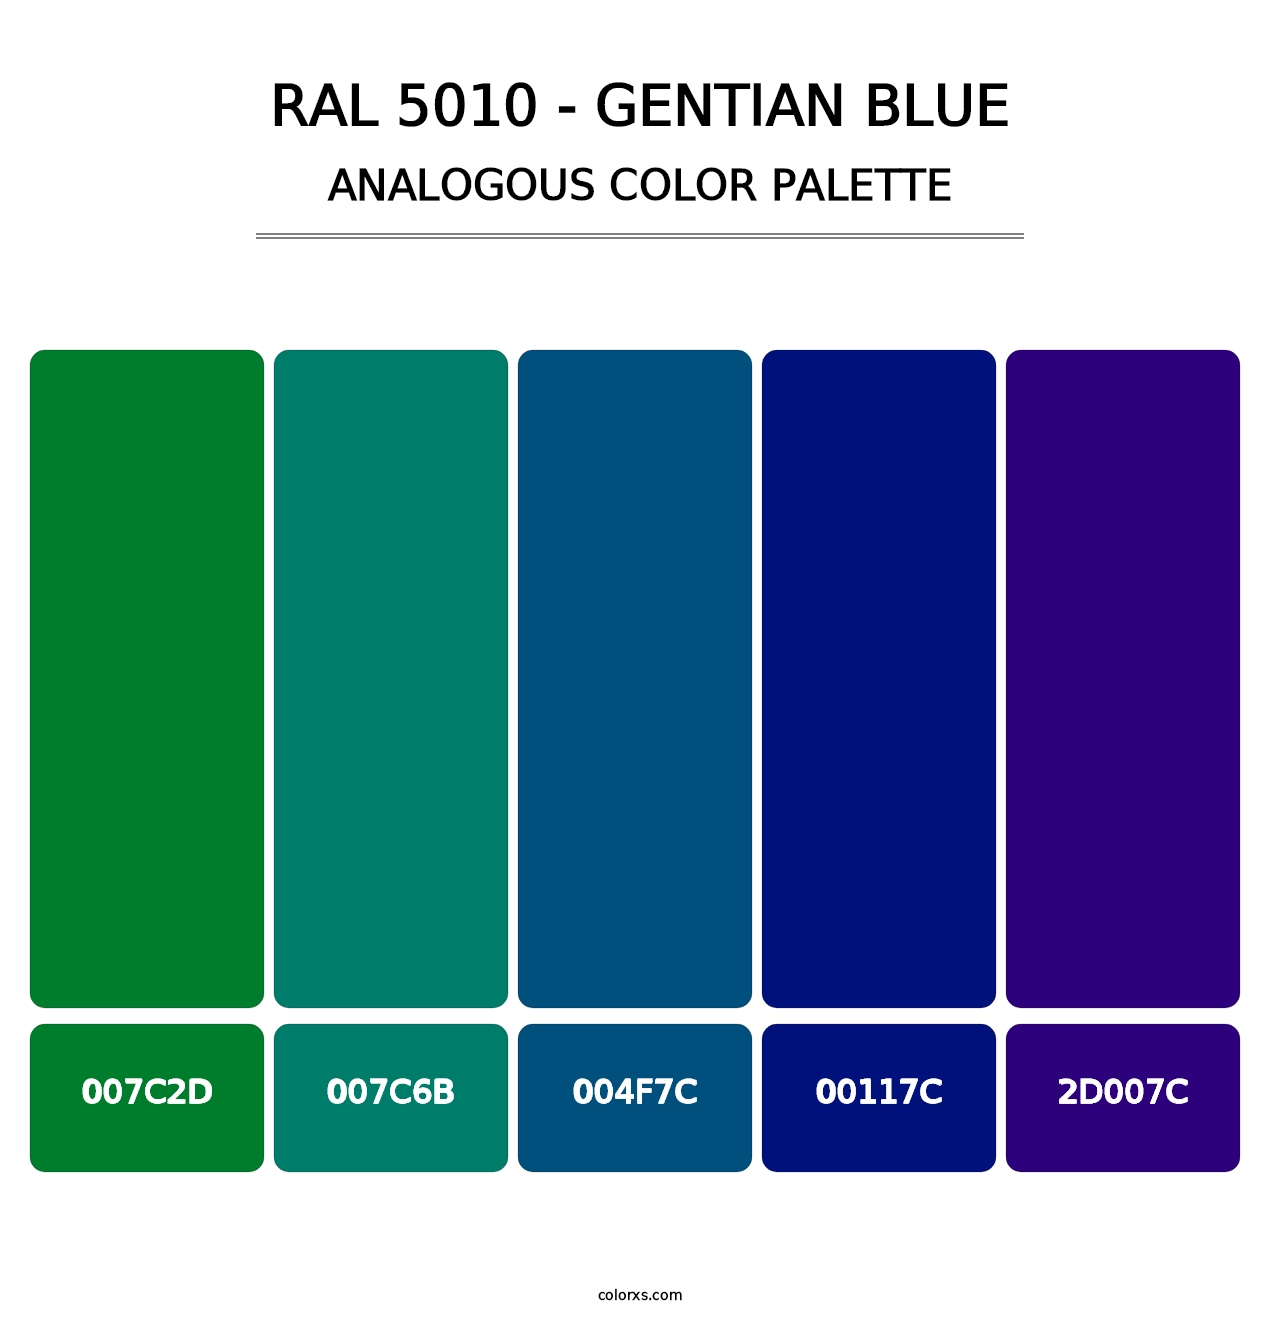 RAL 5010 - Gentian Blue - Analogous Color Palette